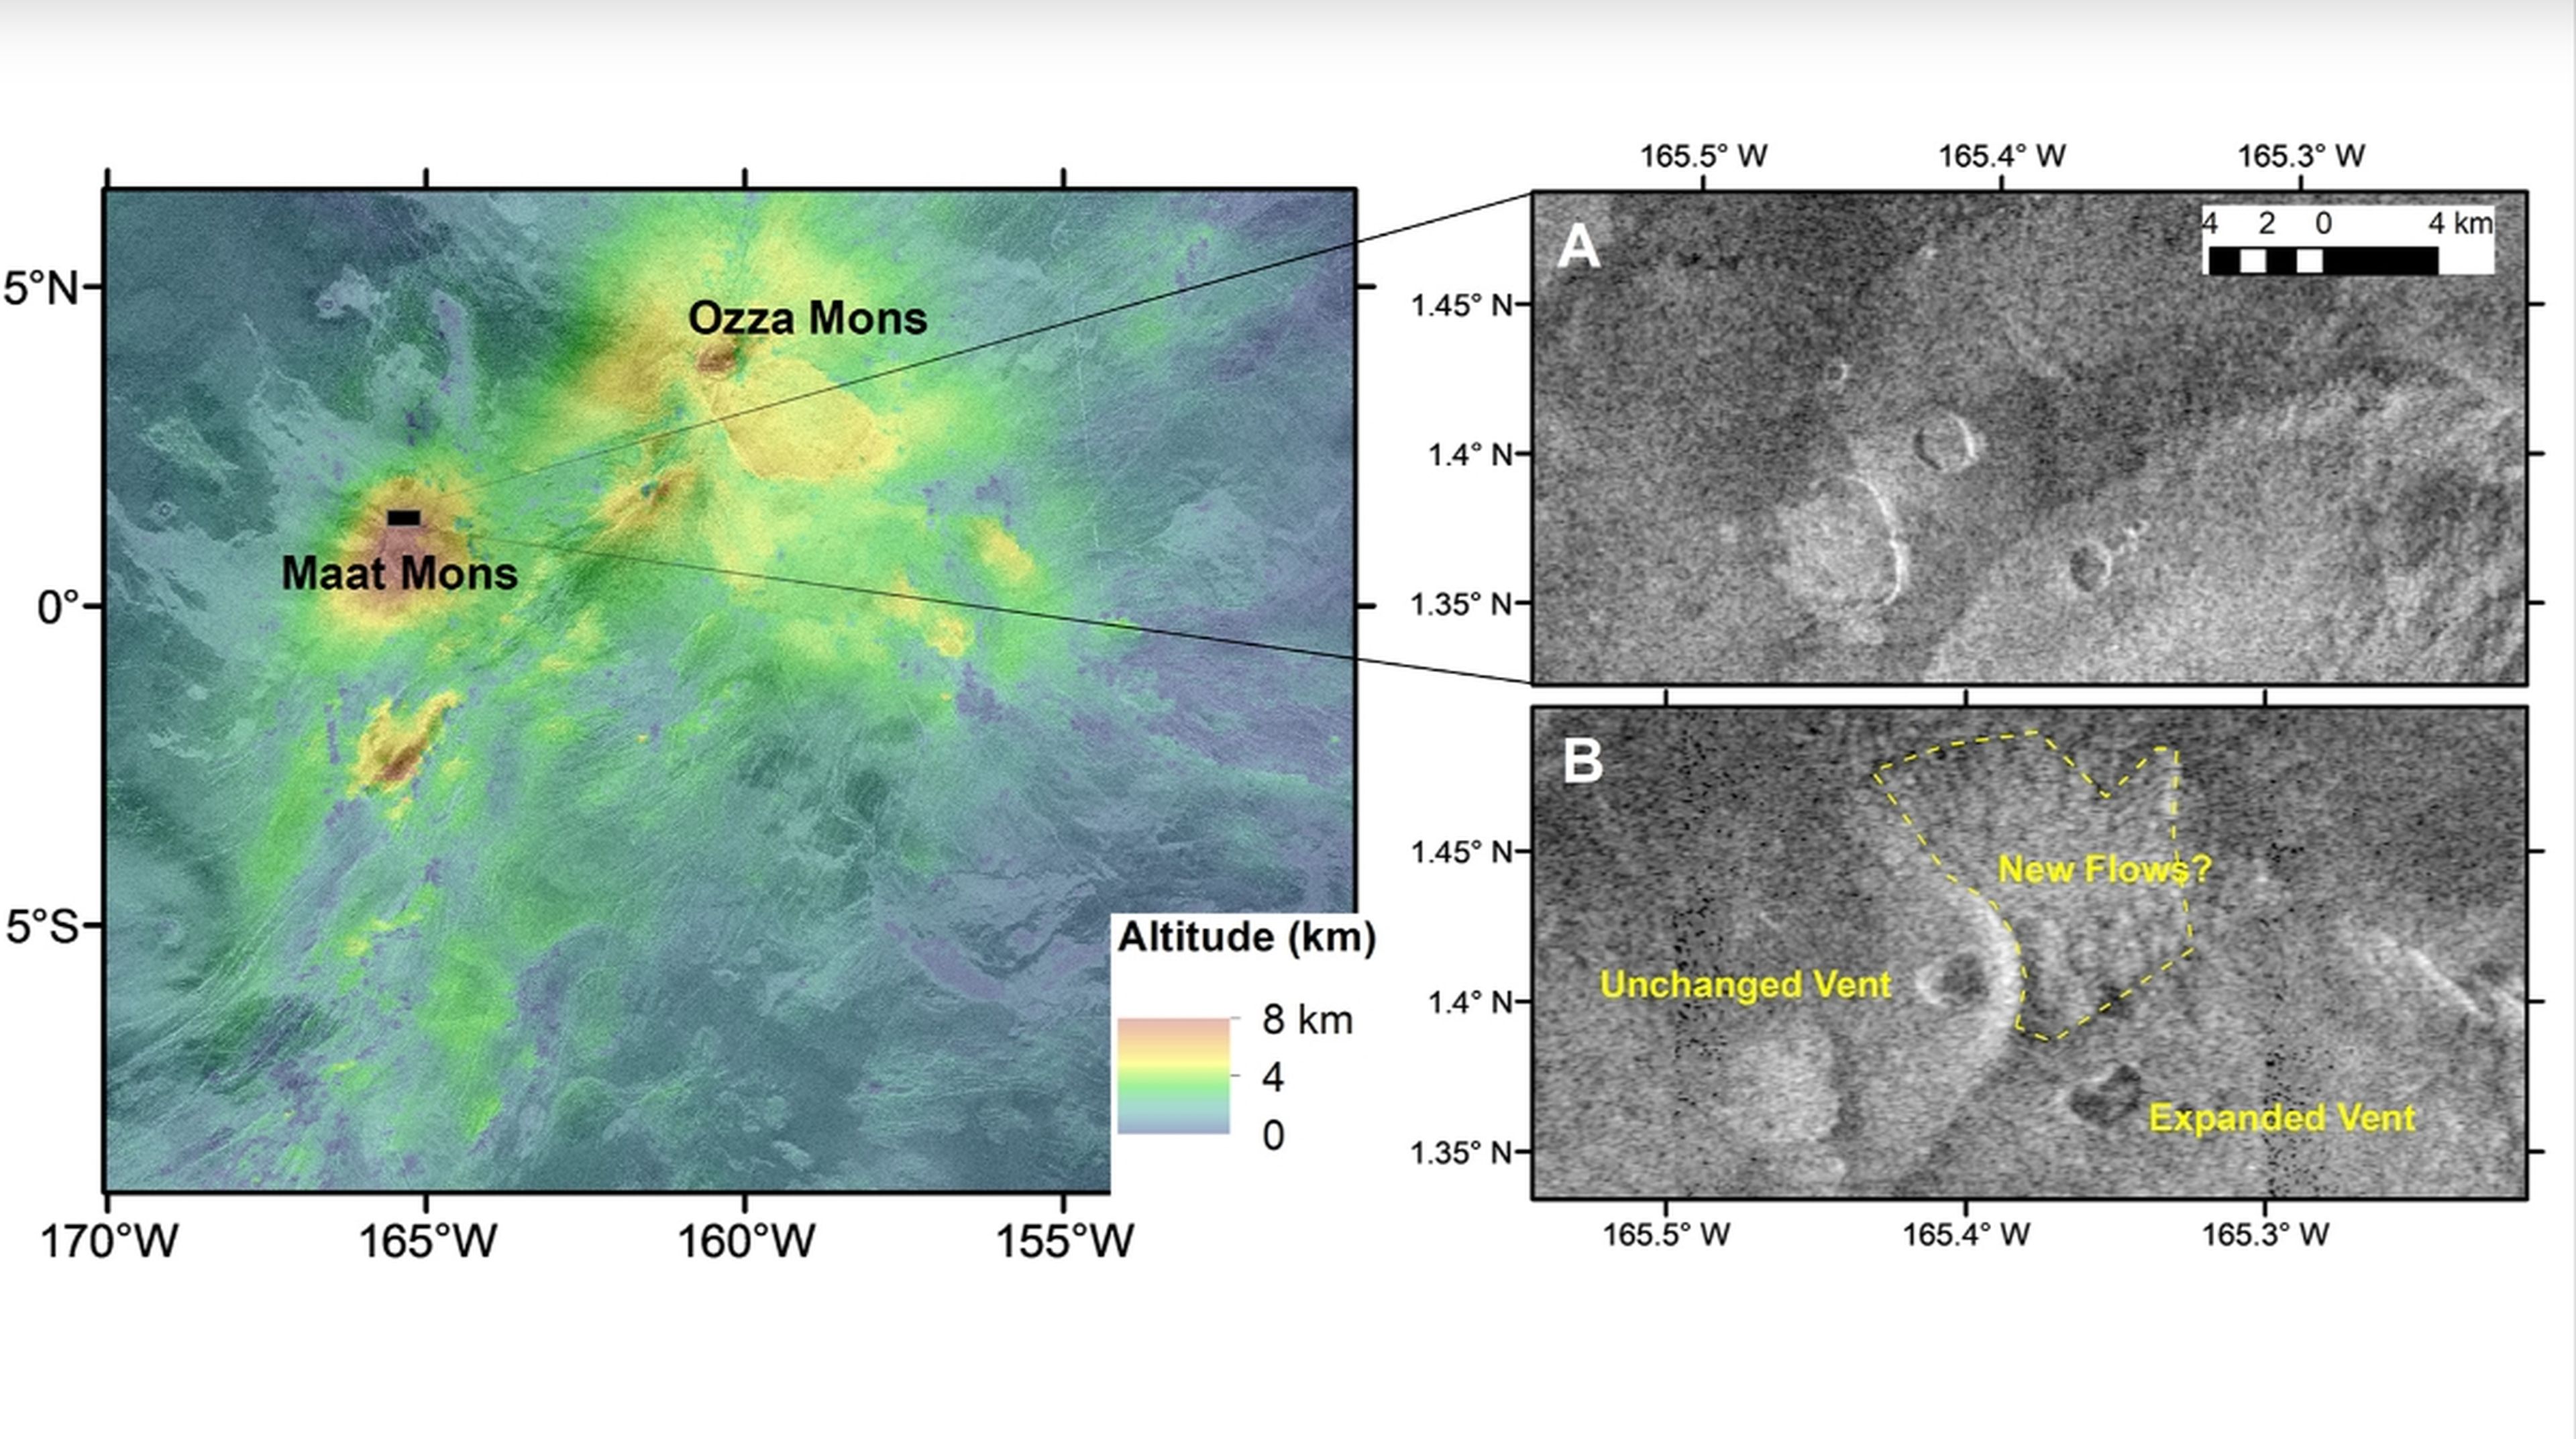 La NASA detecta un volcán activo en Venus gracias a datos de hace más de 30 años